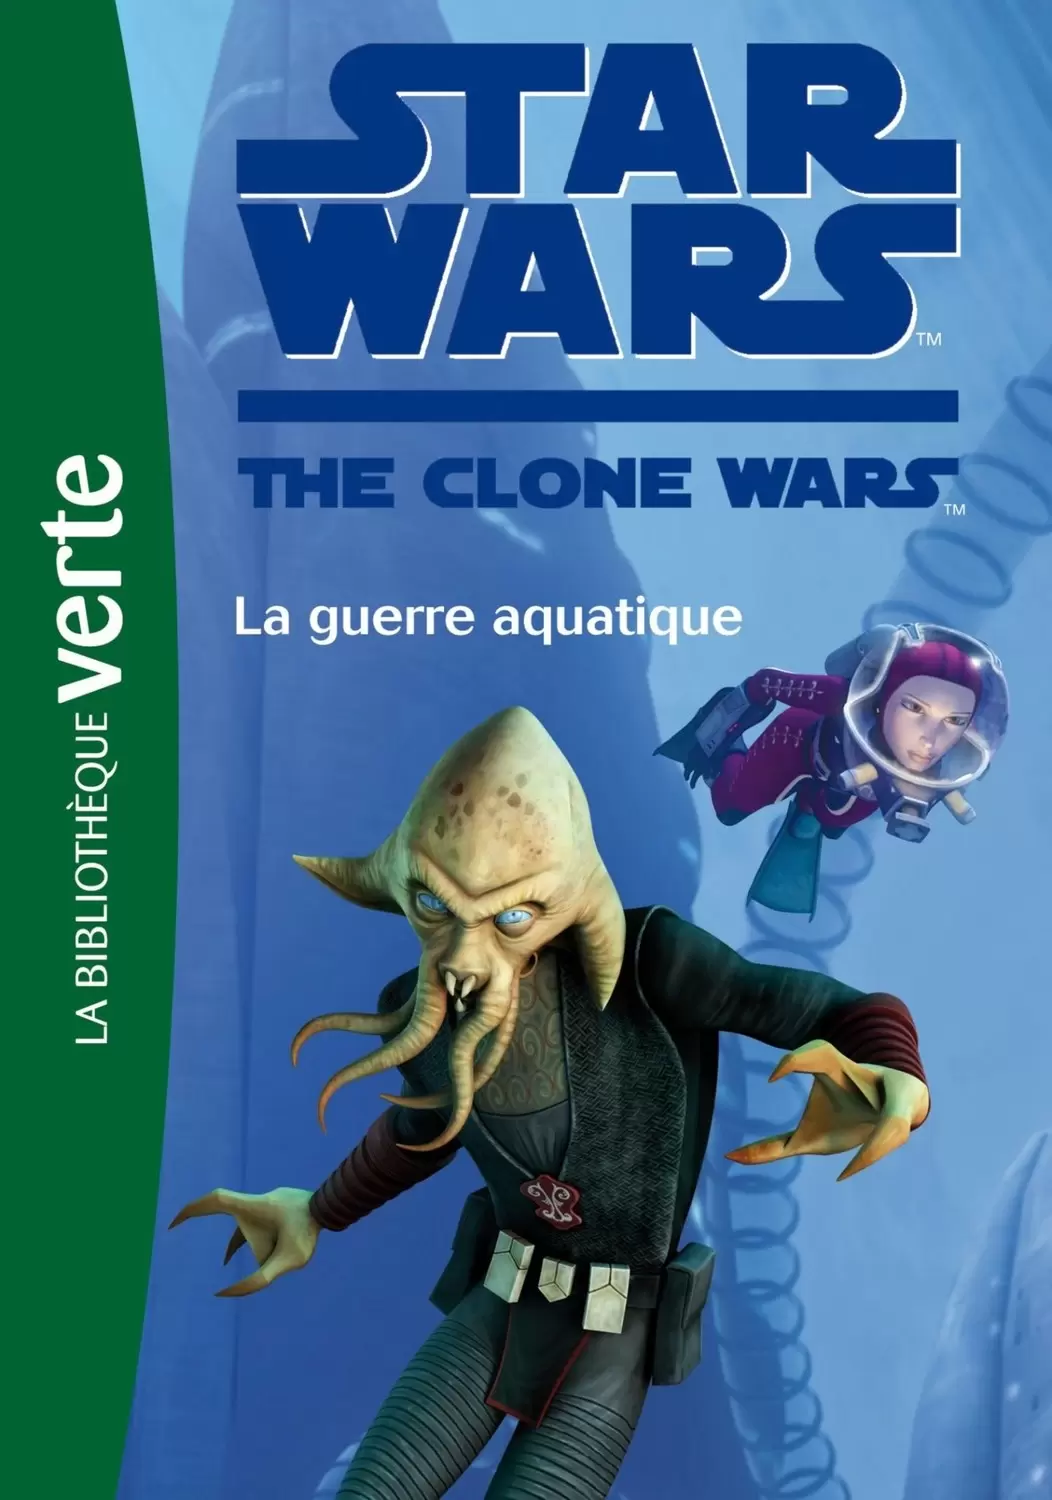 Star Wars The Clone Wars - La guerre aquatique